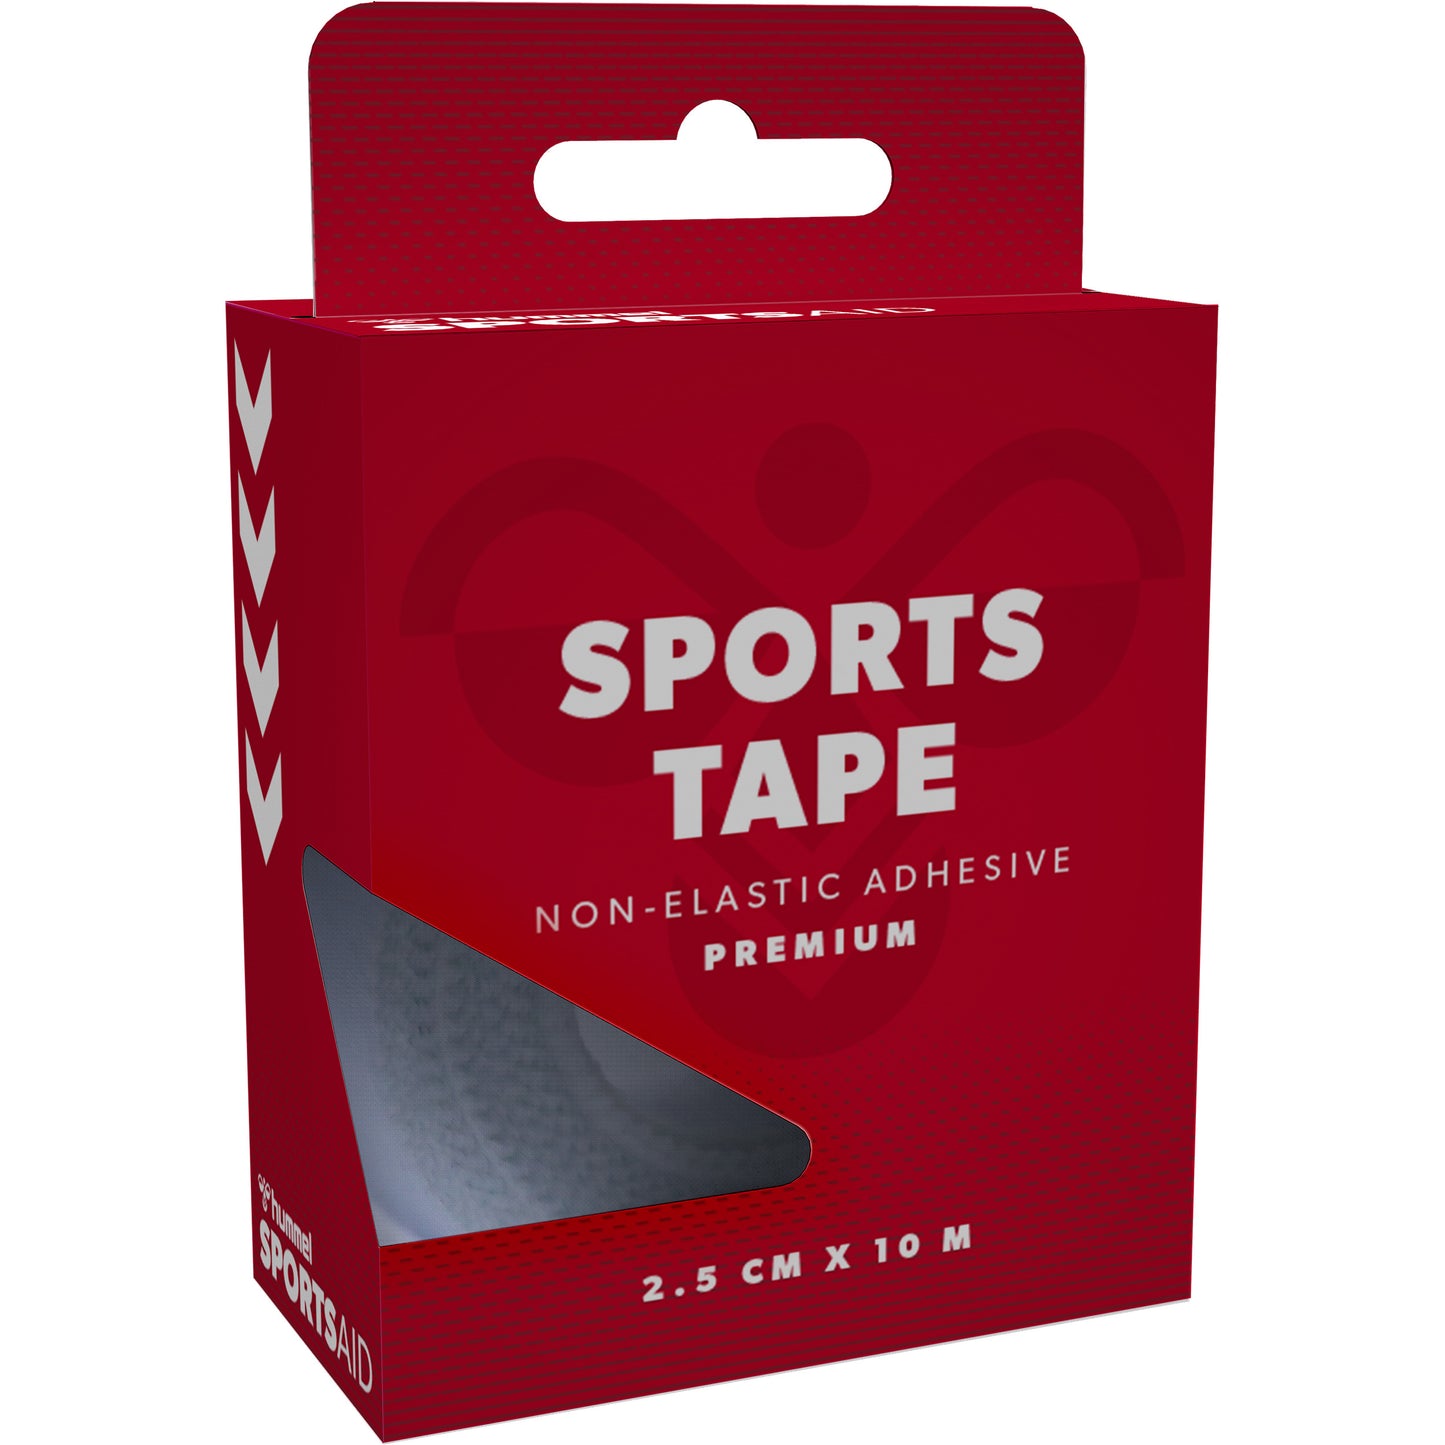 OUTLET - Premium hvid sportstape fra hummel